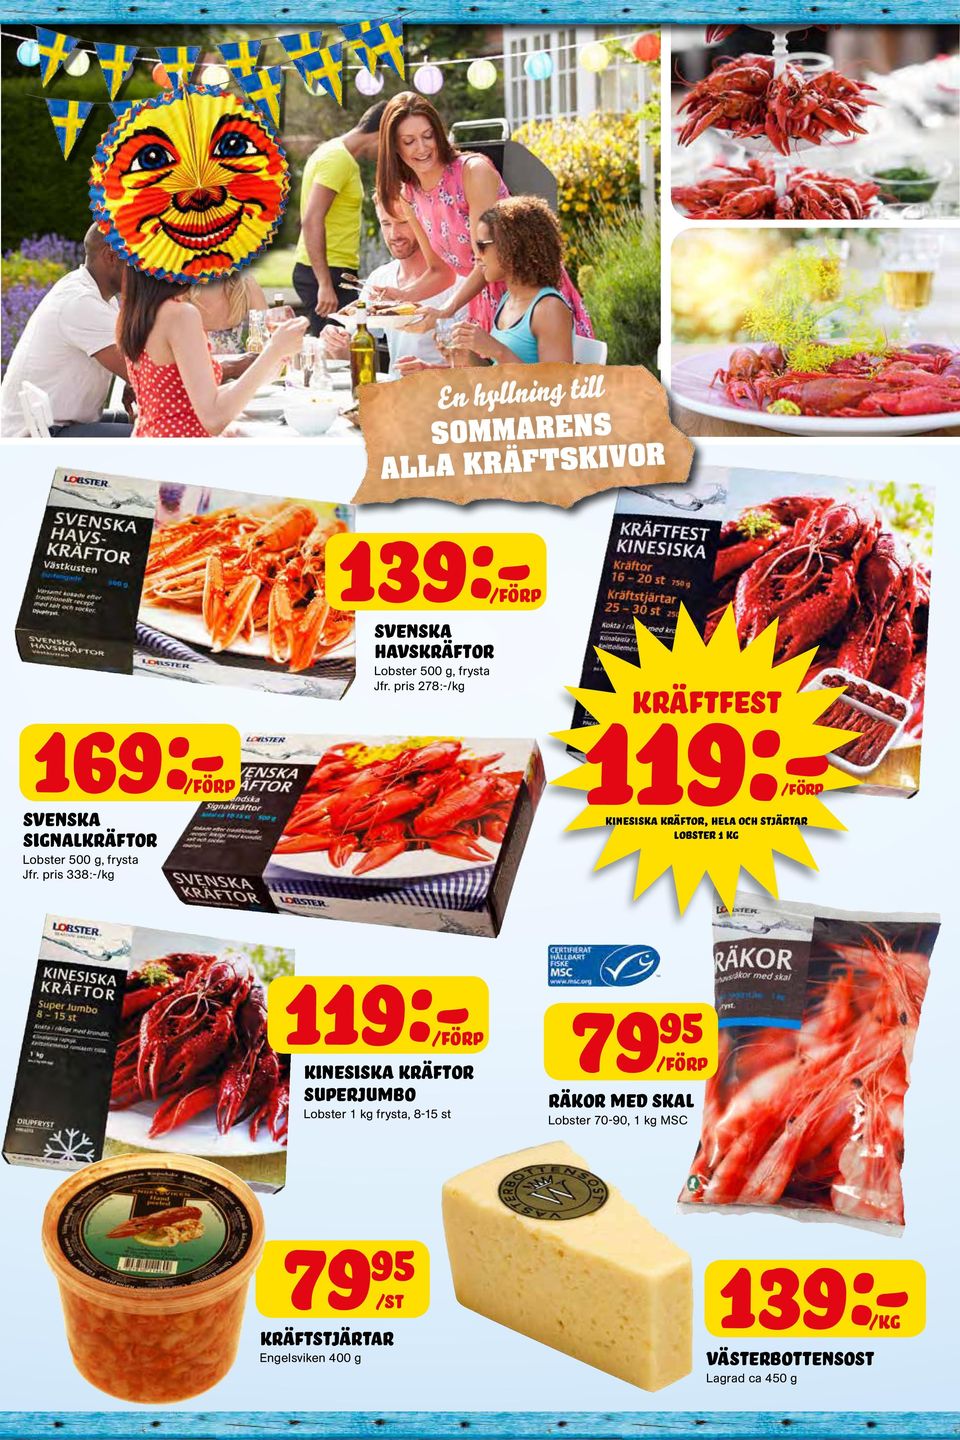 pris 278:-/kg 119:- kräftfest kinesiska kräftor, hela och stjärtar lobster 1 kg 119:- kinesiska kräftor